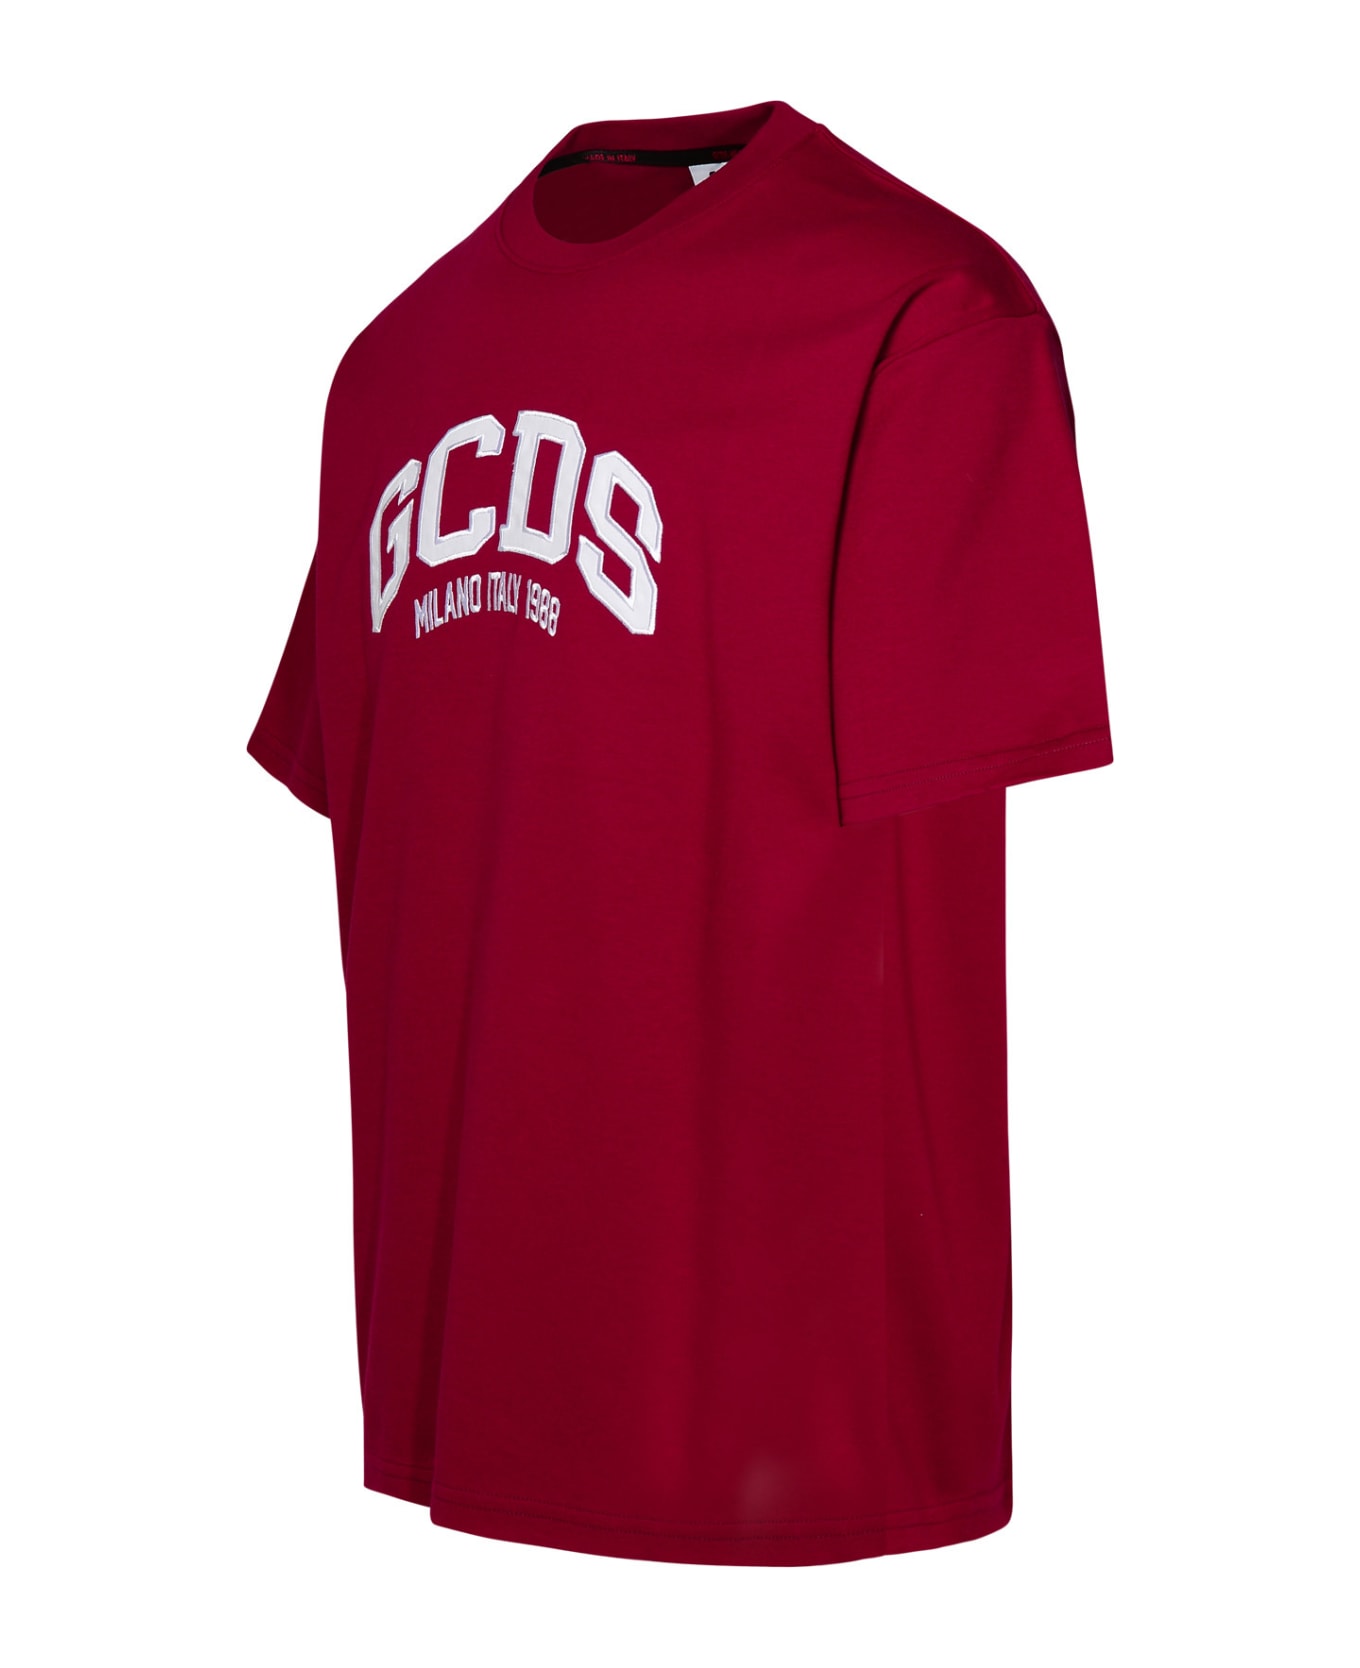 GCDS Burgundy Cotton T-shirt - Bordeaux シャツ